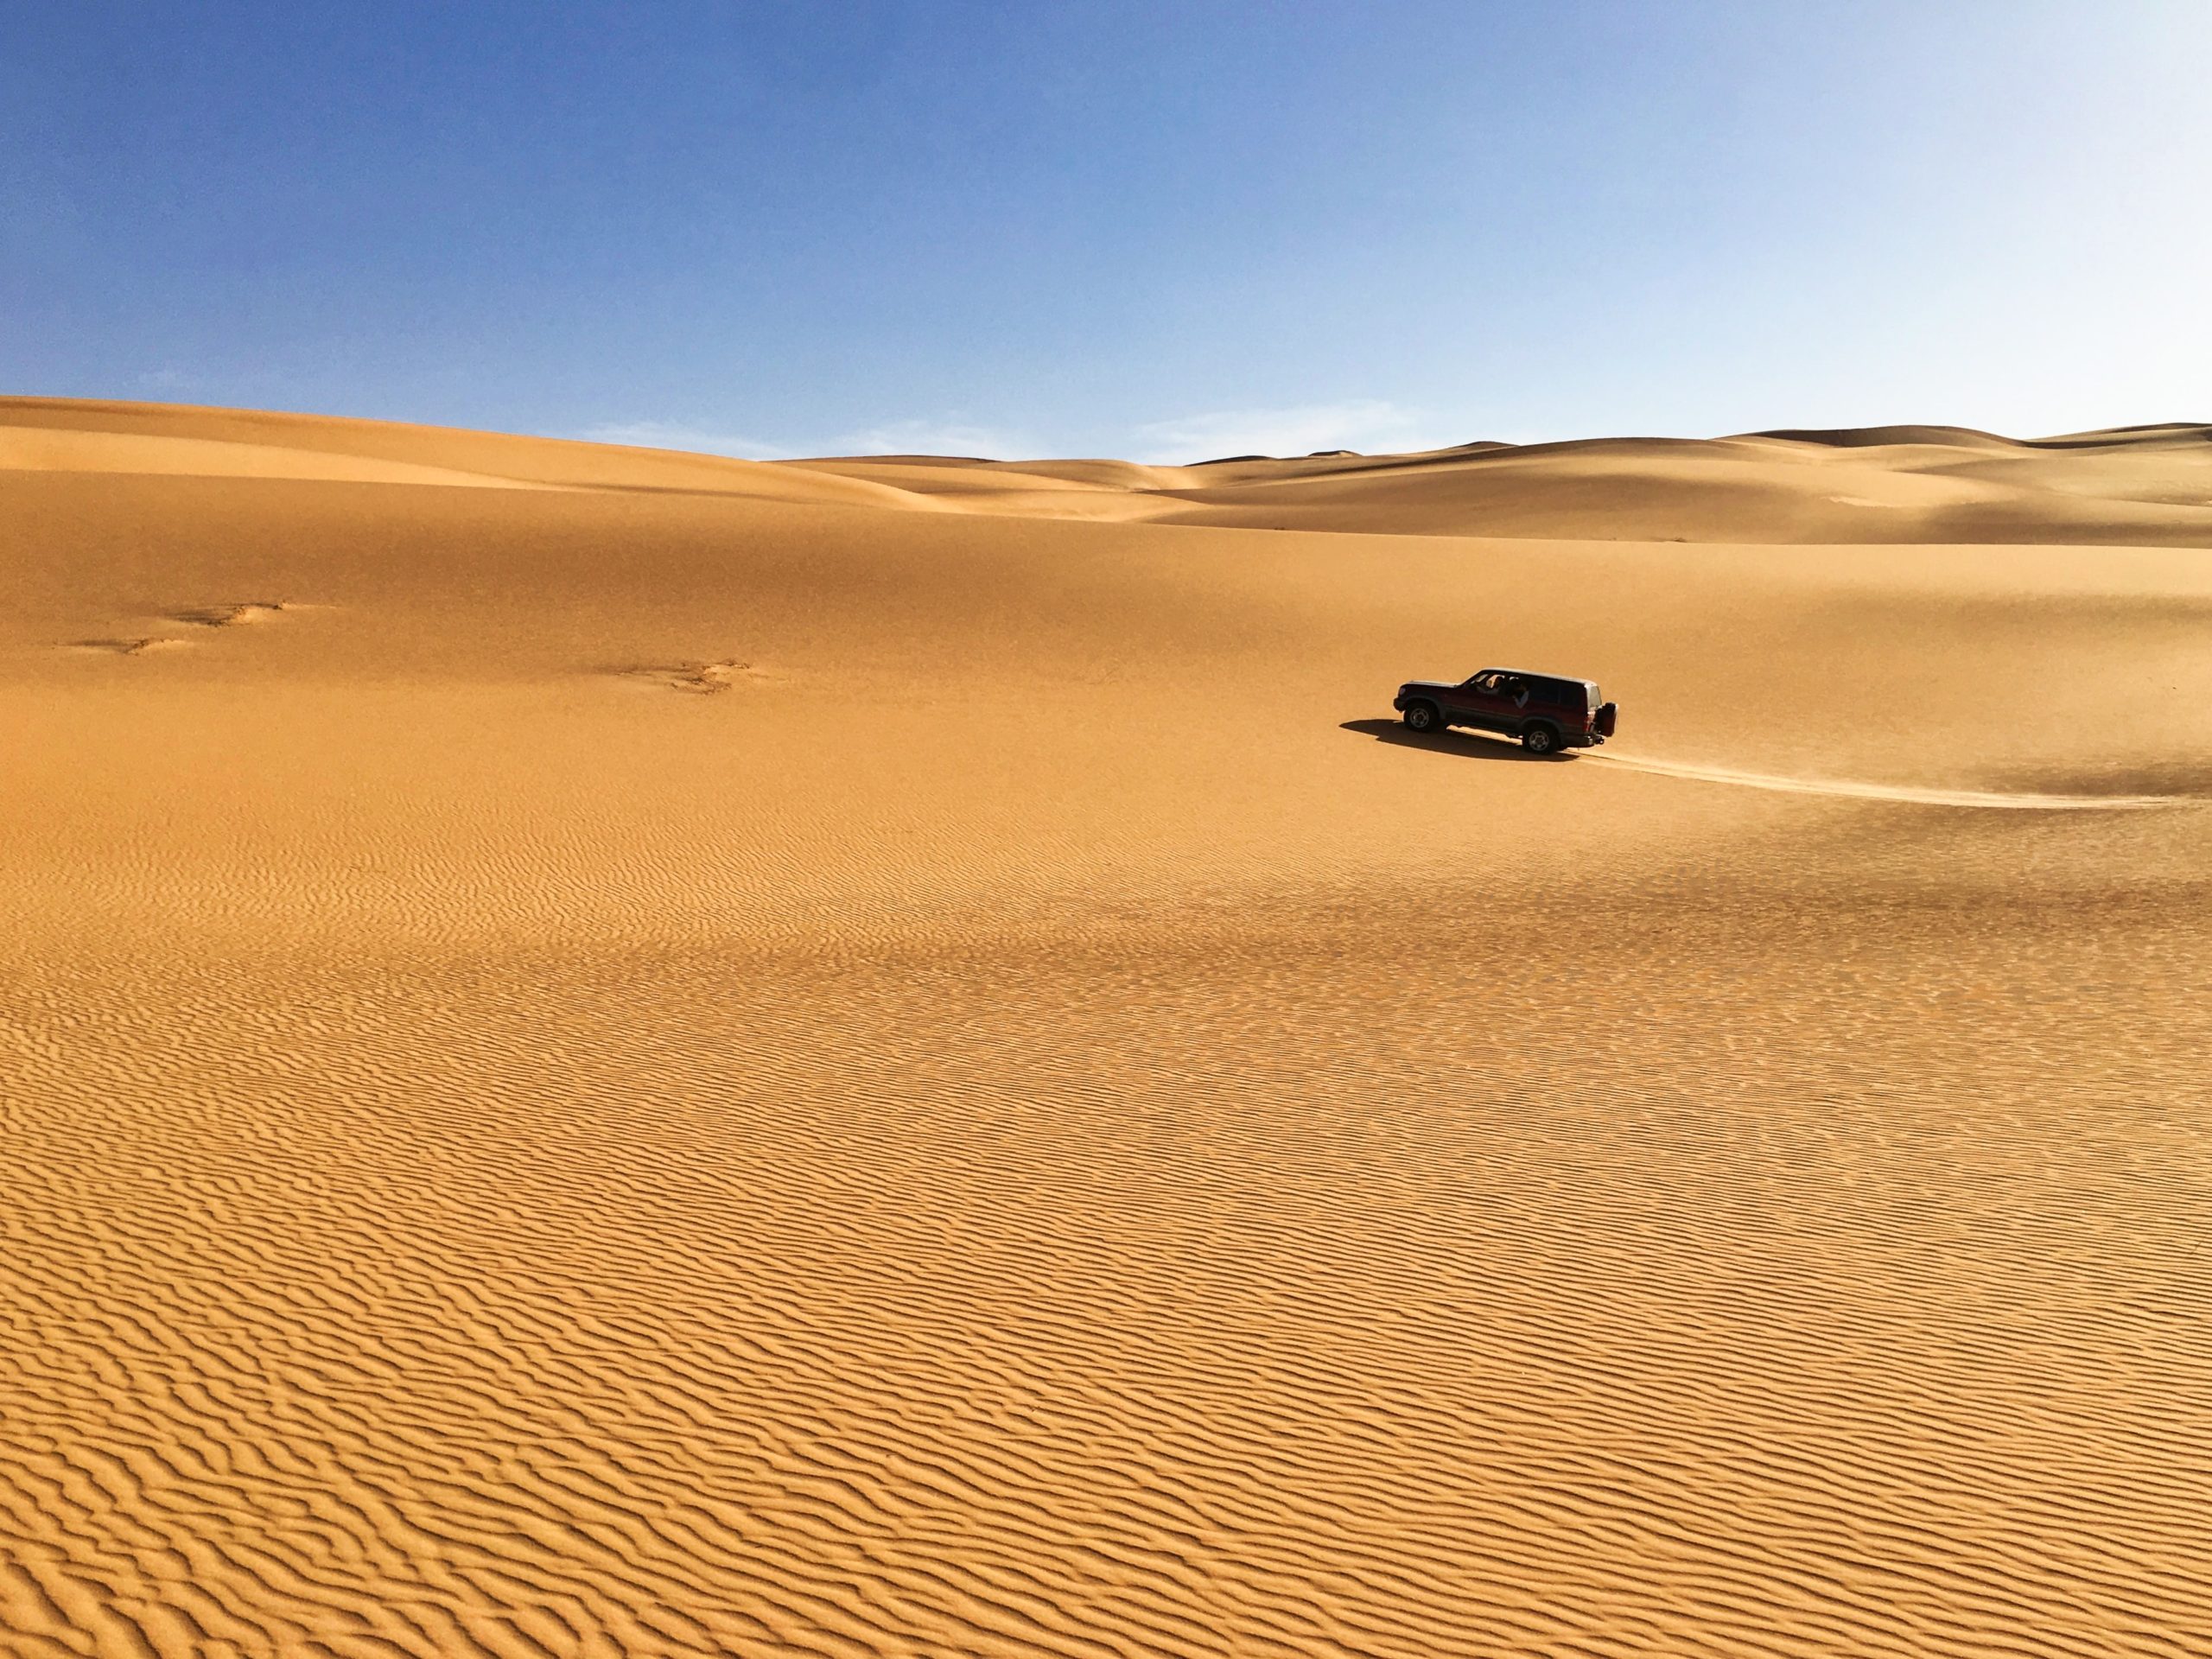 Λιβύη: Πέθαναν από δίψα προσπαθώντας να διασχίσουν την έρημο όταν χάλασε το όχημά τους